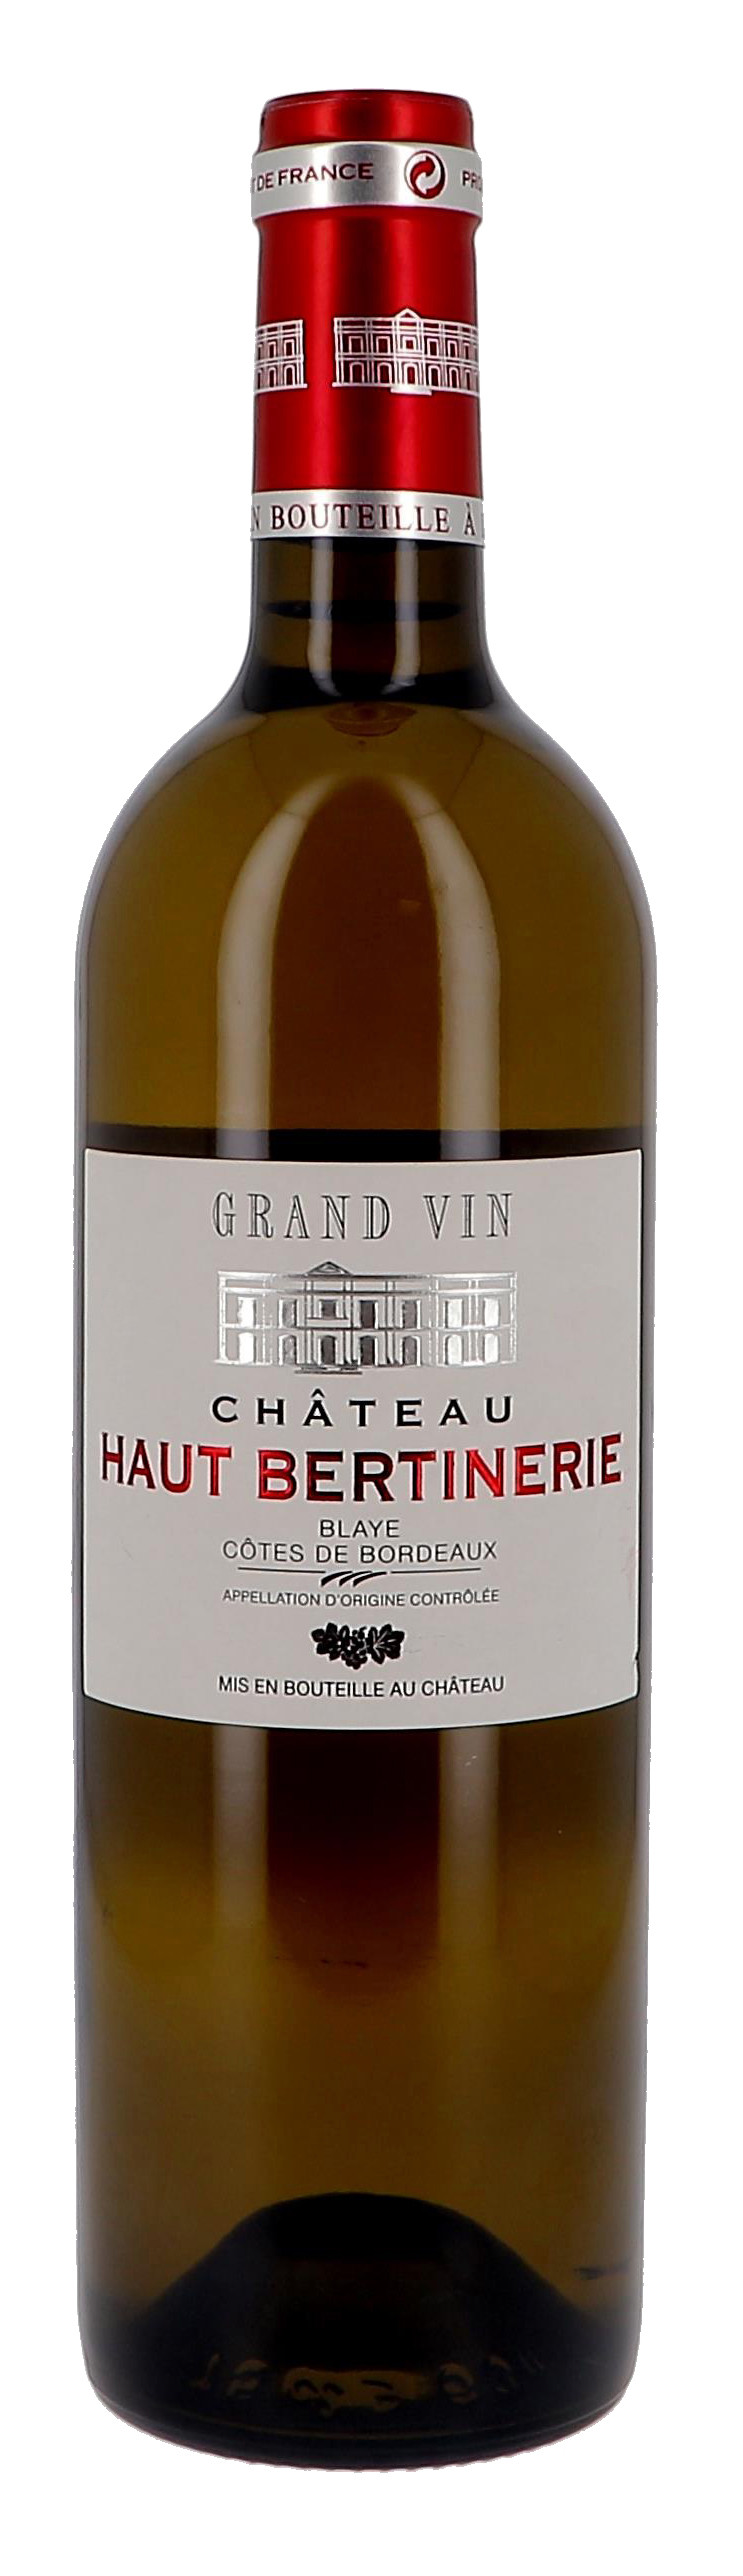 Chateau Haut-Bertinerie blanc 75cl 2017 Blaye Cotes de Bordeaux